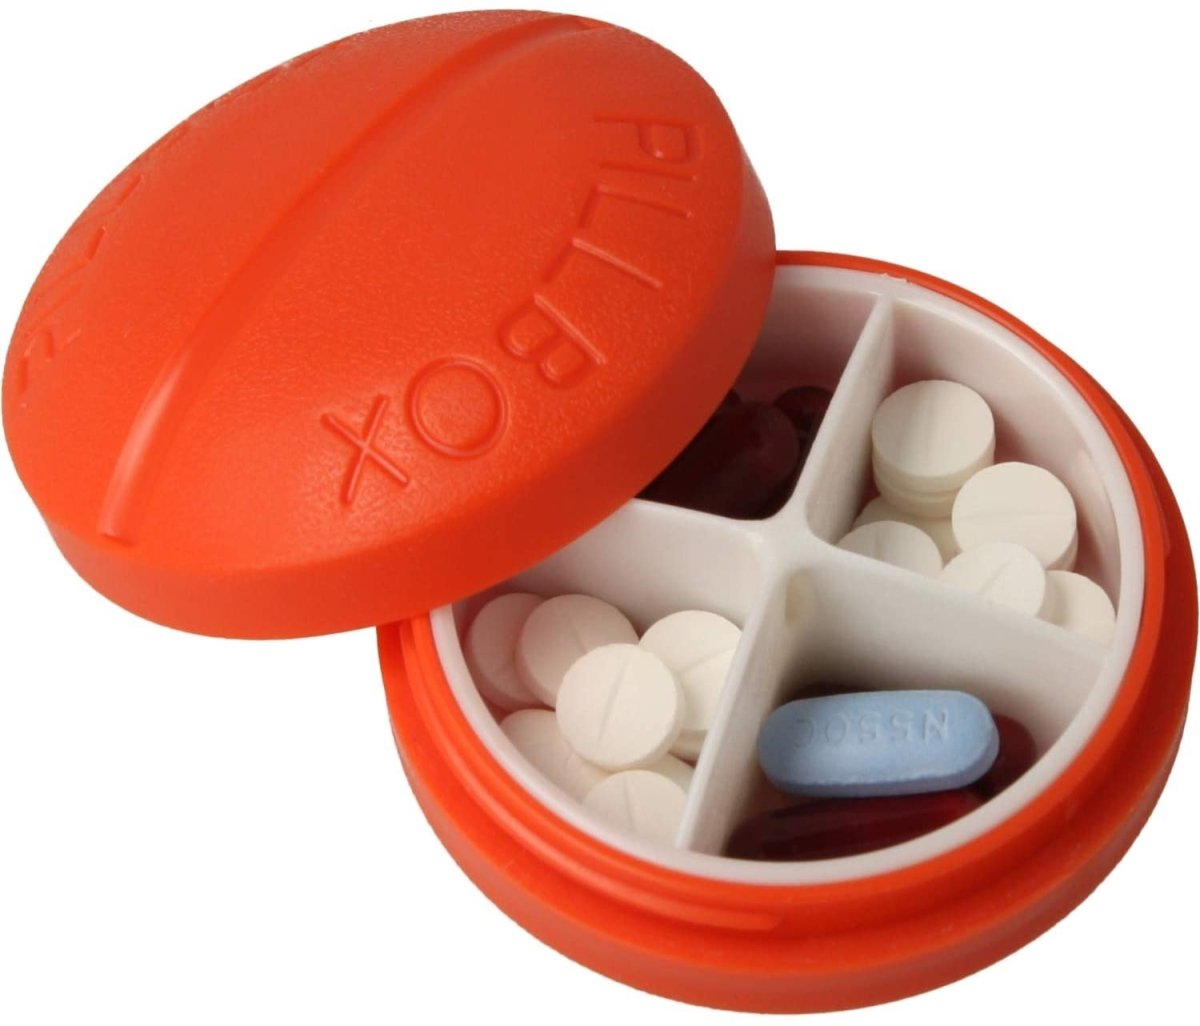 Pastillero pequeño diario bolsillo - 3 compartimentos - Organizador de pastillas pill box estuche redondo - Color rojo - movilcom.com